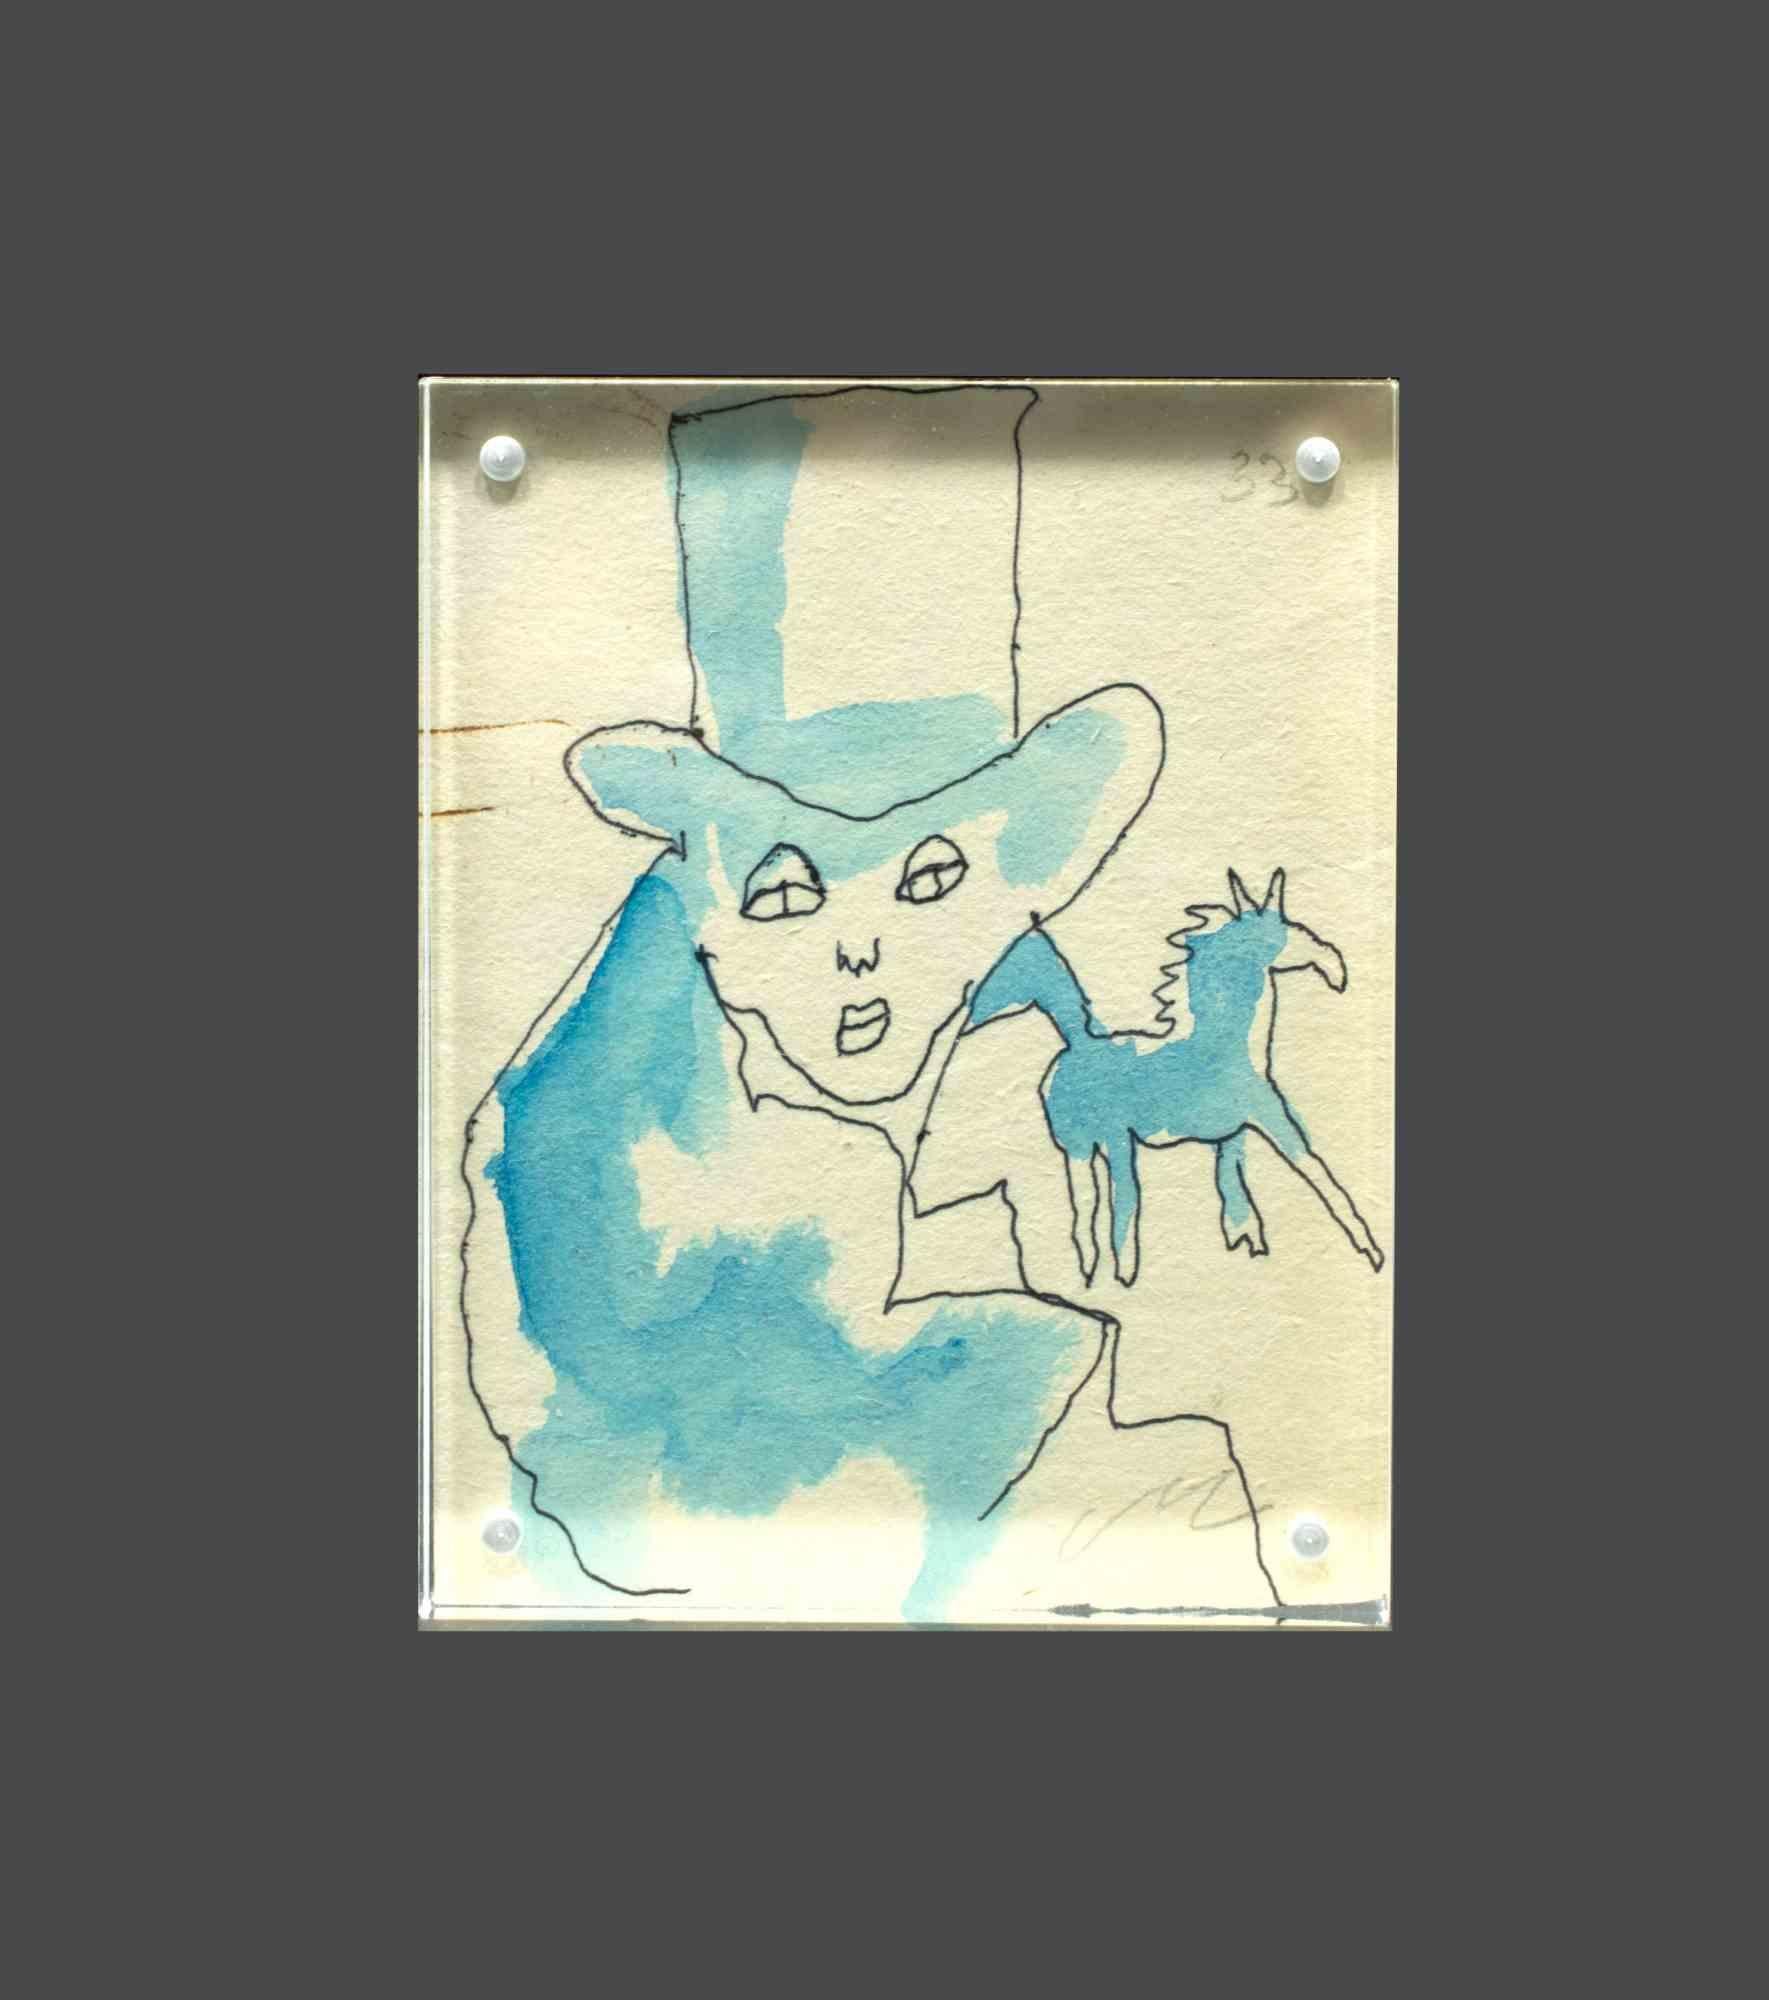 Der Reiter ist eine Originalzeichnung von Mino Maccari aus den 1960er Jahren. 

Tusche und Aquarell auf Papier.

Monogrammiert am linken unteren Rand und nummerierte Ausgabe oben , 33. 

Freistehender Plexiglasrahmen.

11x9 cm. 

Gute Bedingungen.